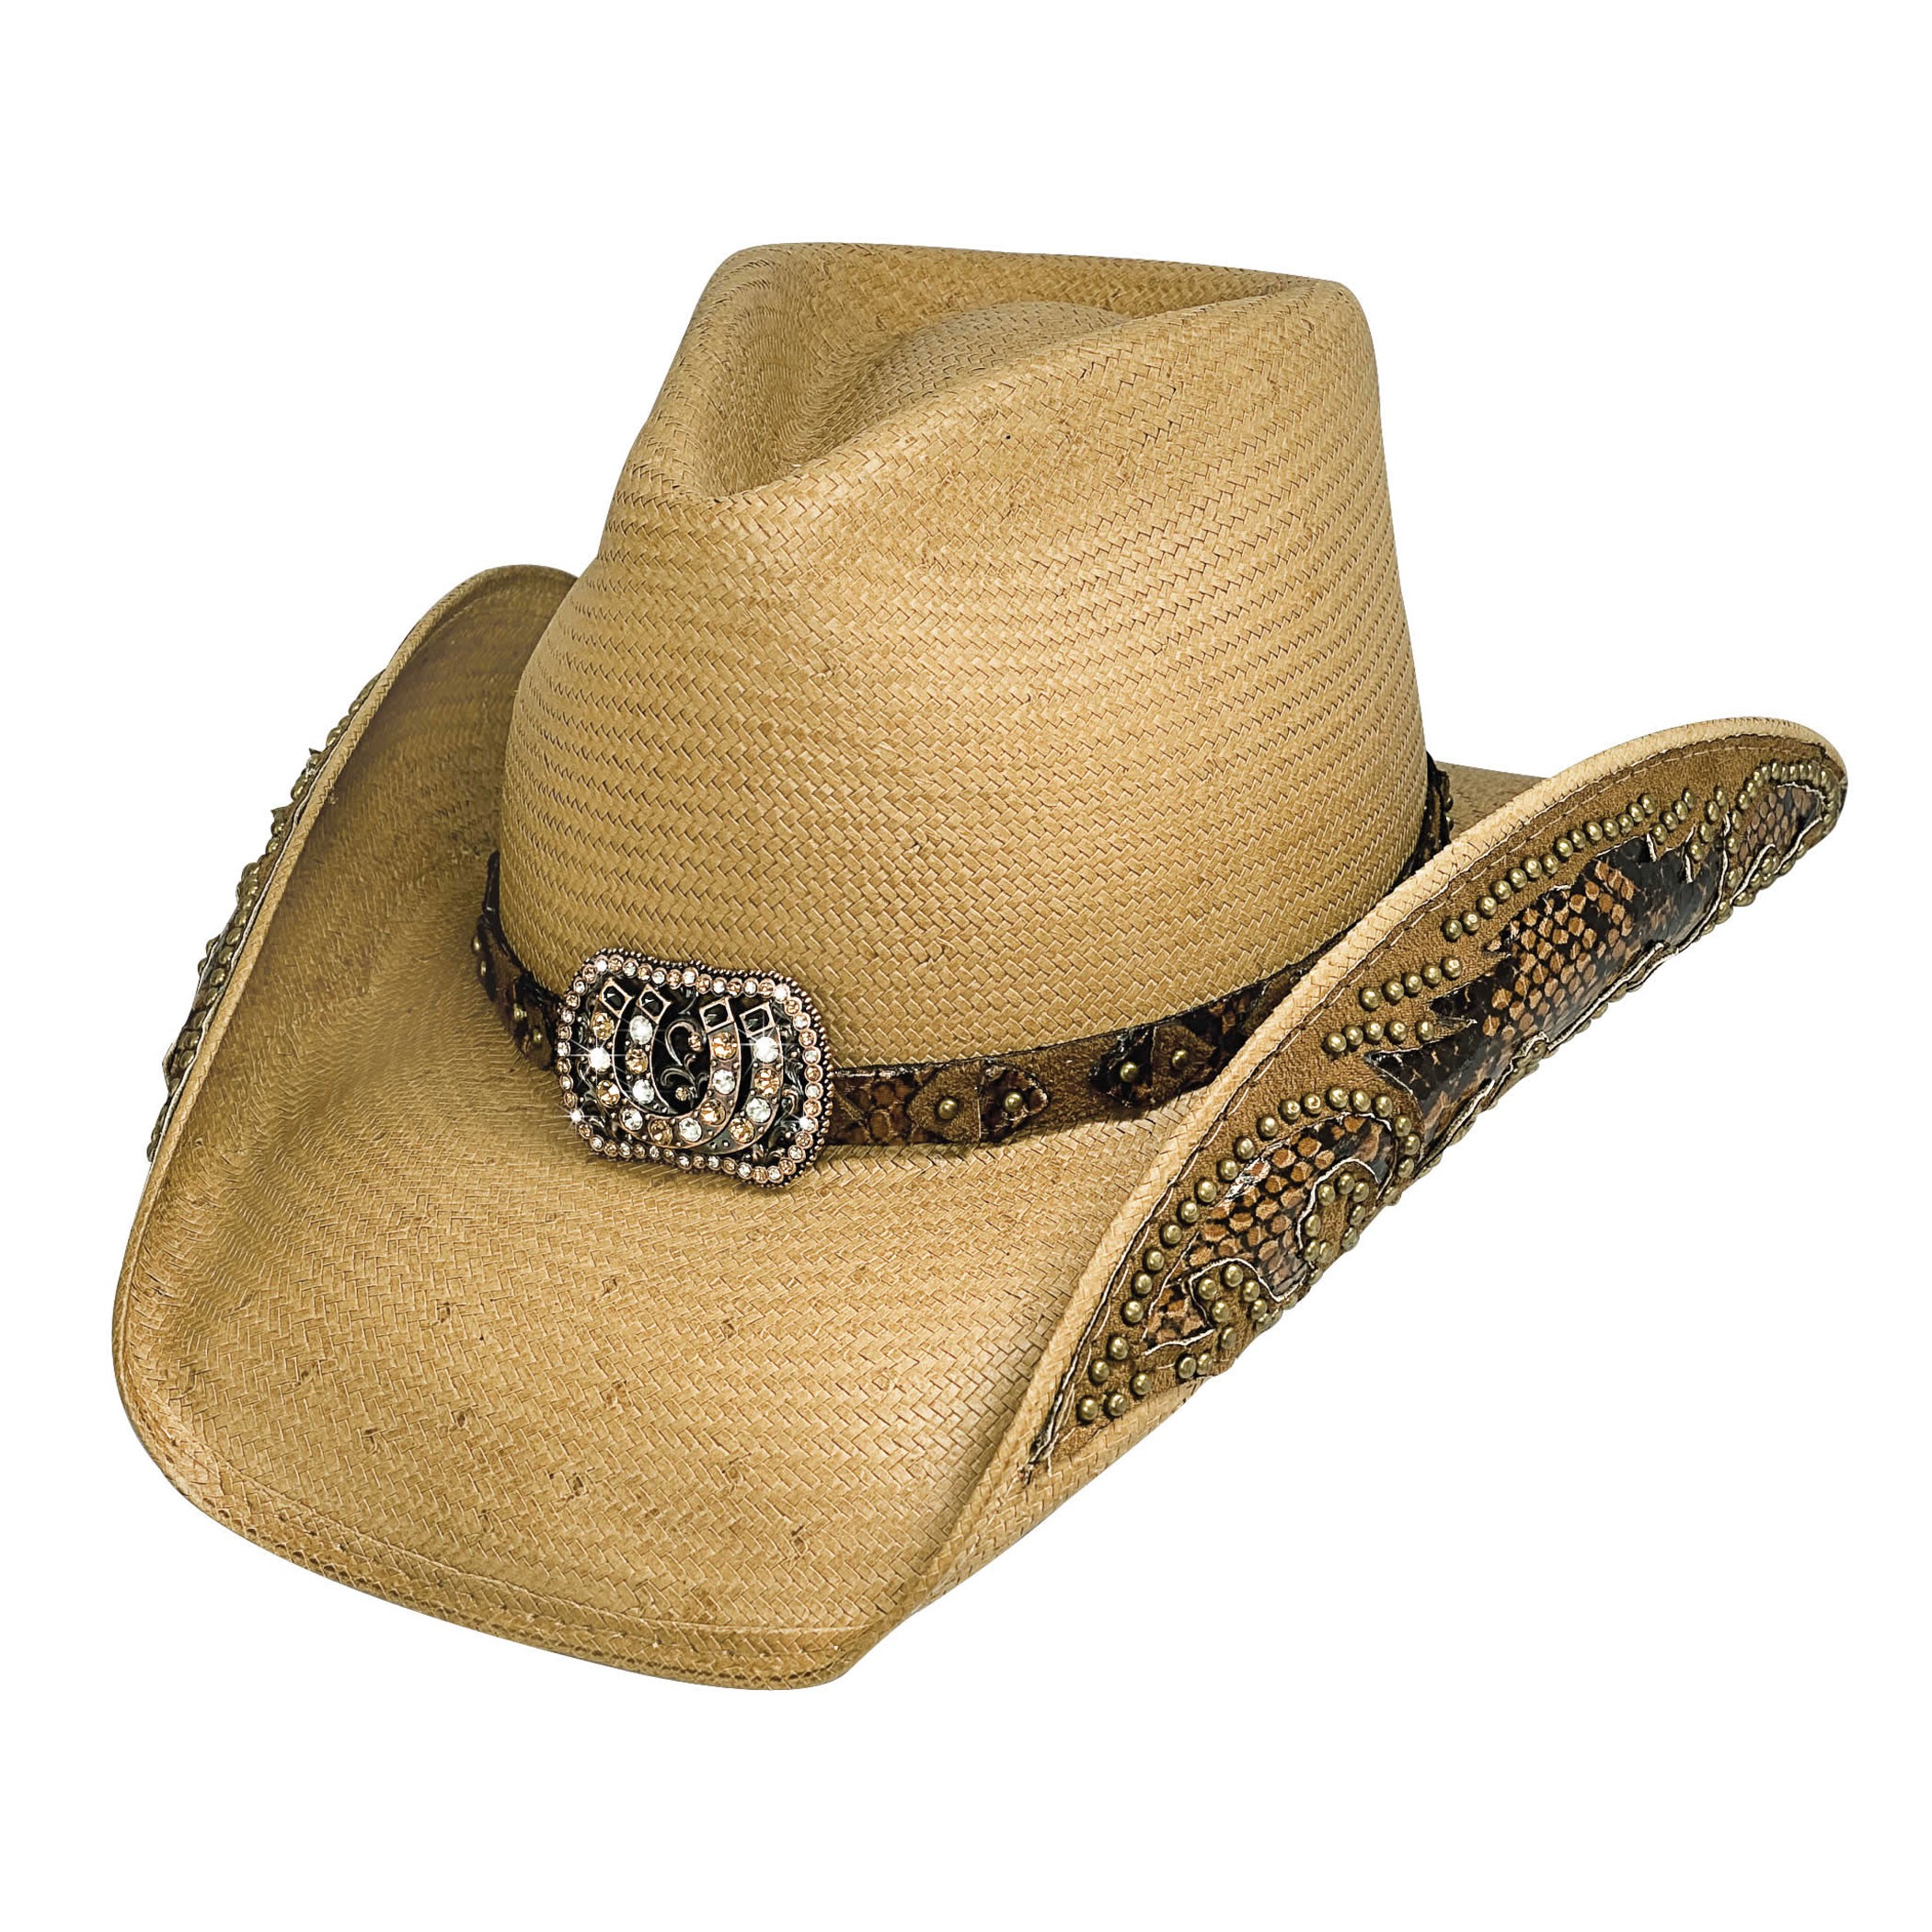 Cowgirl Fantasy Straw Cowboy Hat   Qc Supply